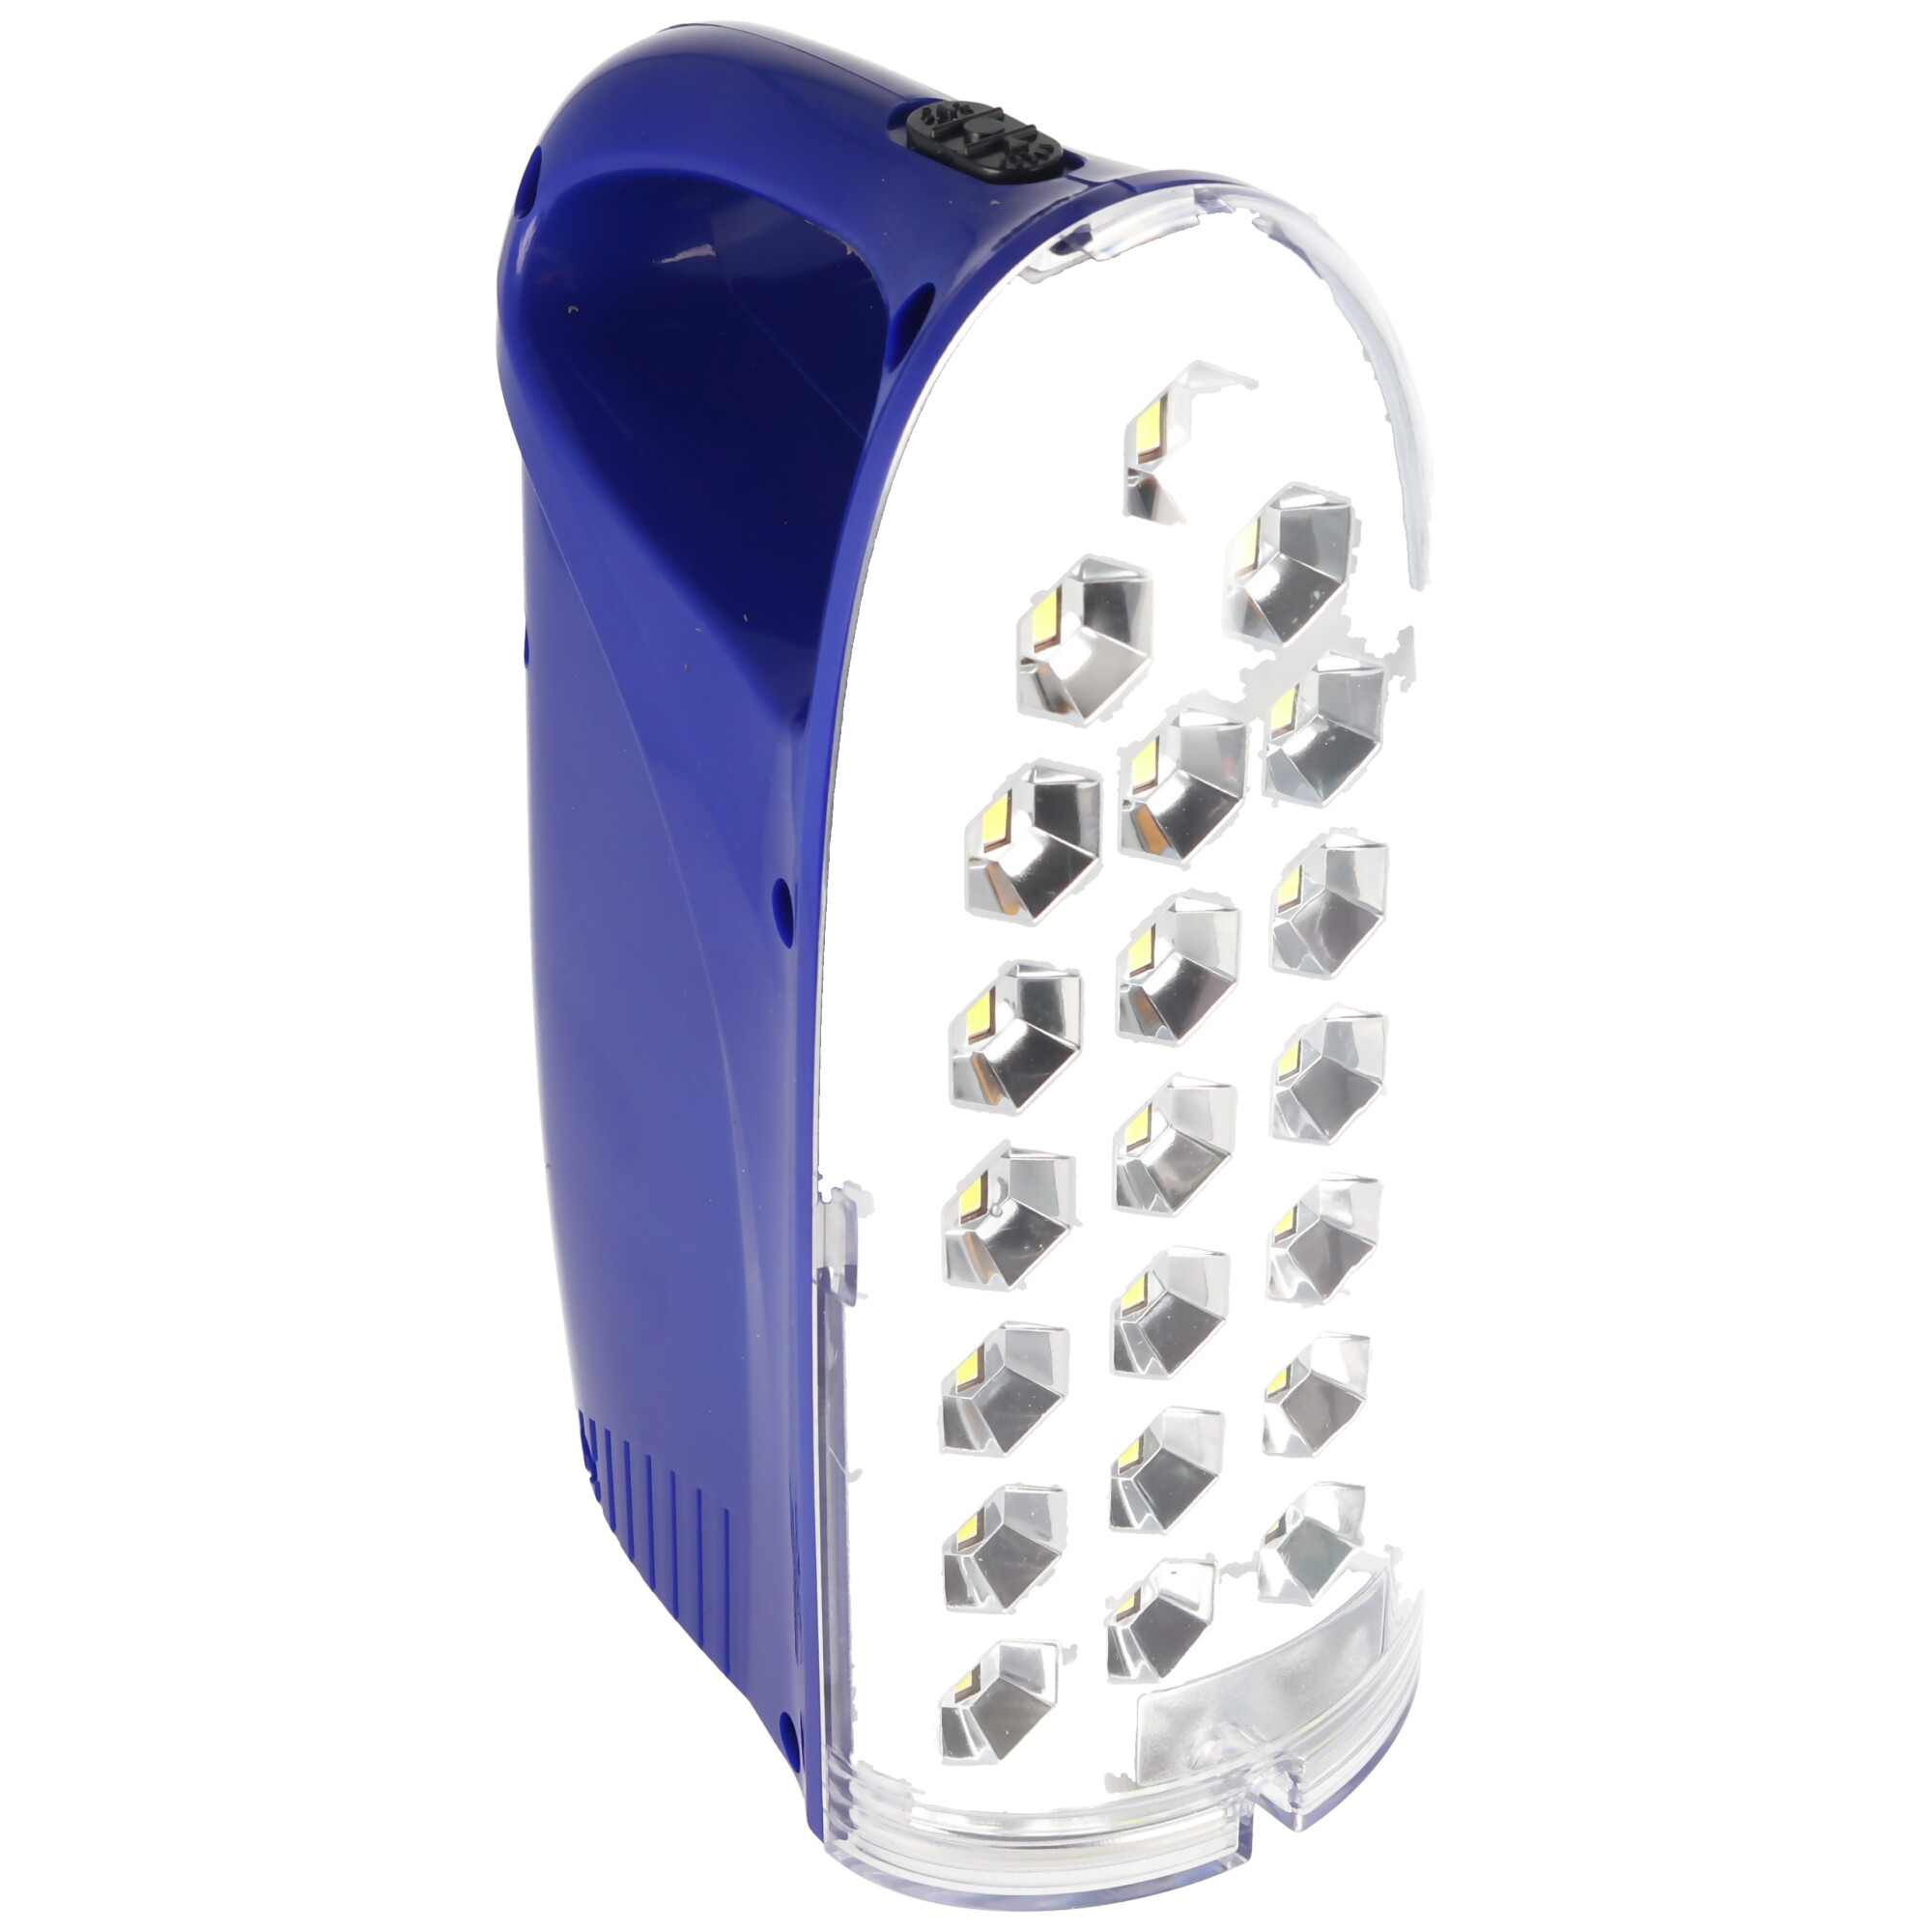 IR312 LED-Lampe Anti Black Out, tragbare wiederaufladbare Notleuchte mit externem Ladegerät, 250 Lumen, mit Stromausfallfunktion